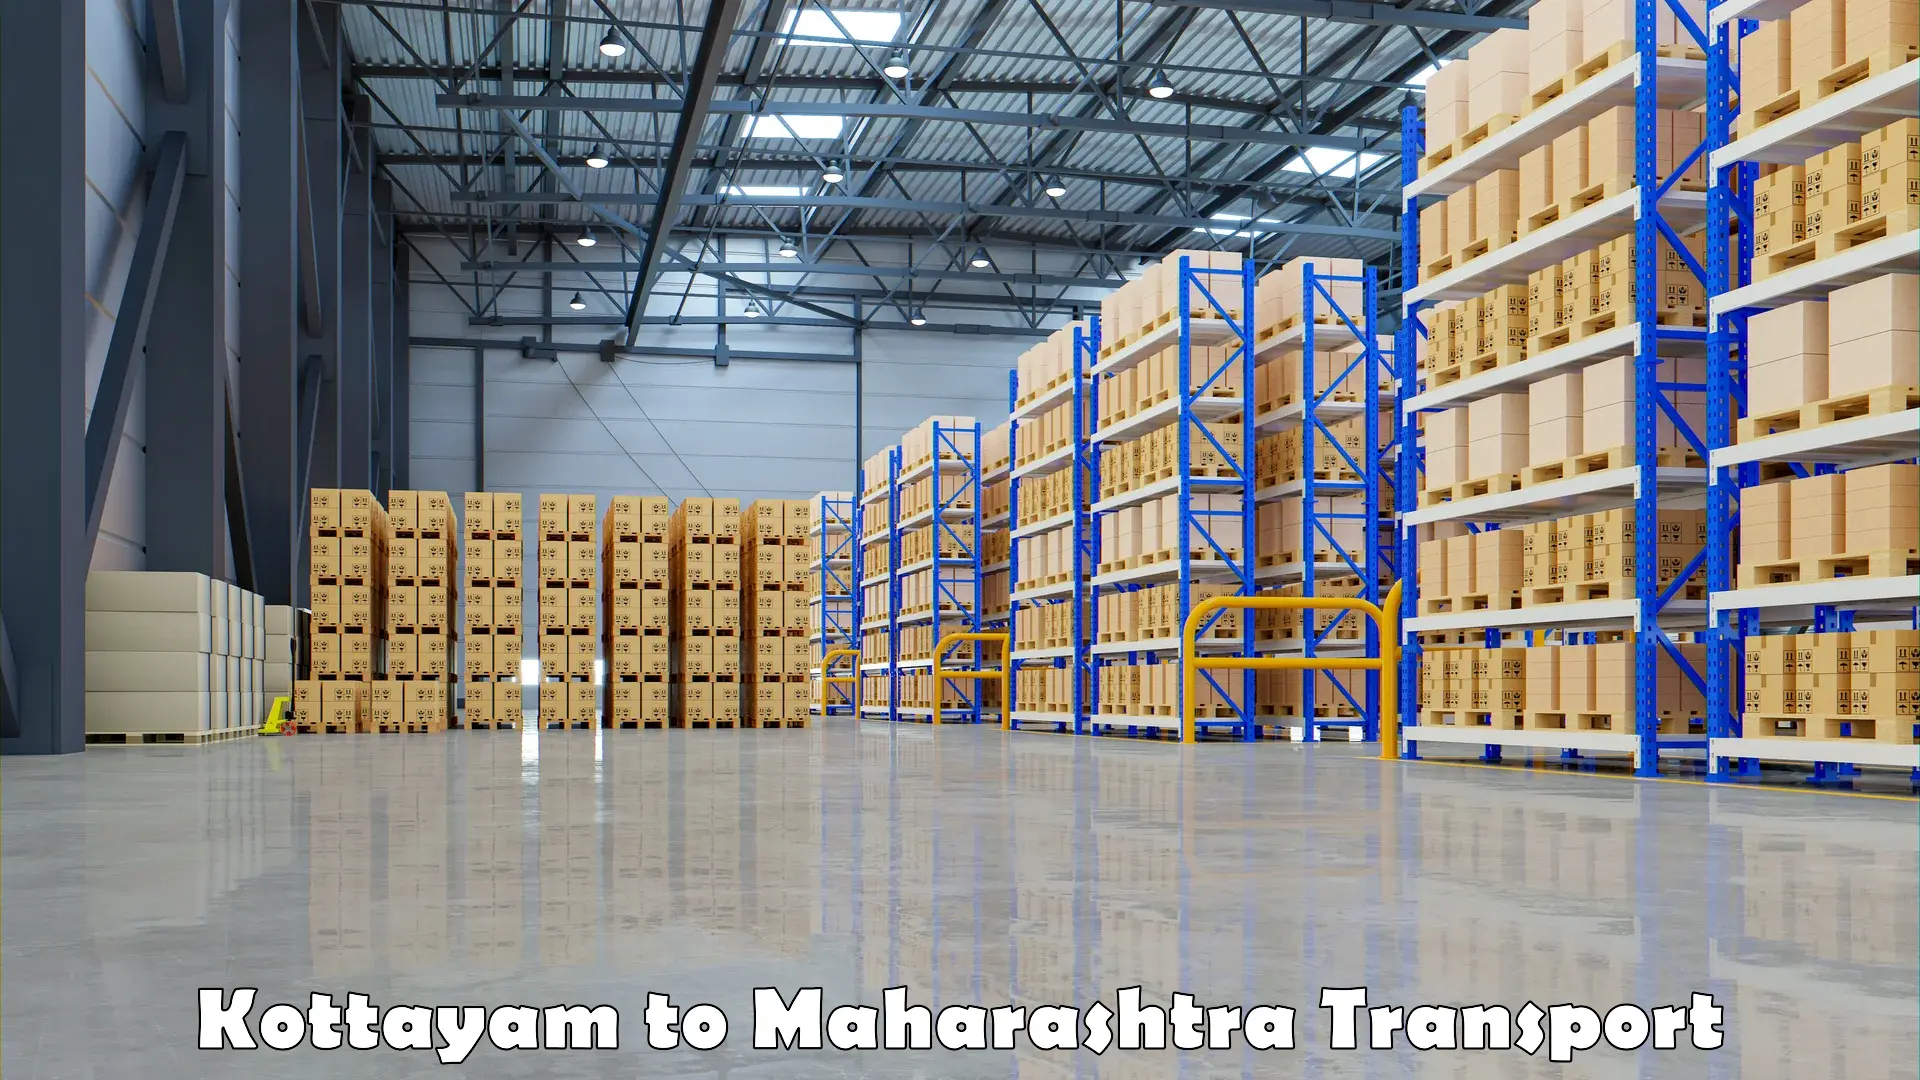 Delivery service Kottayam to Maharashtra